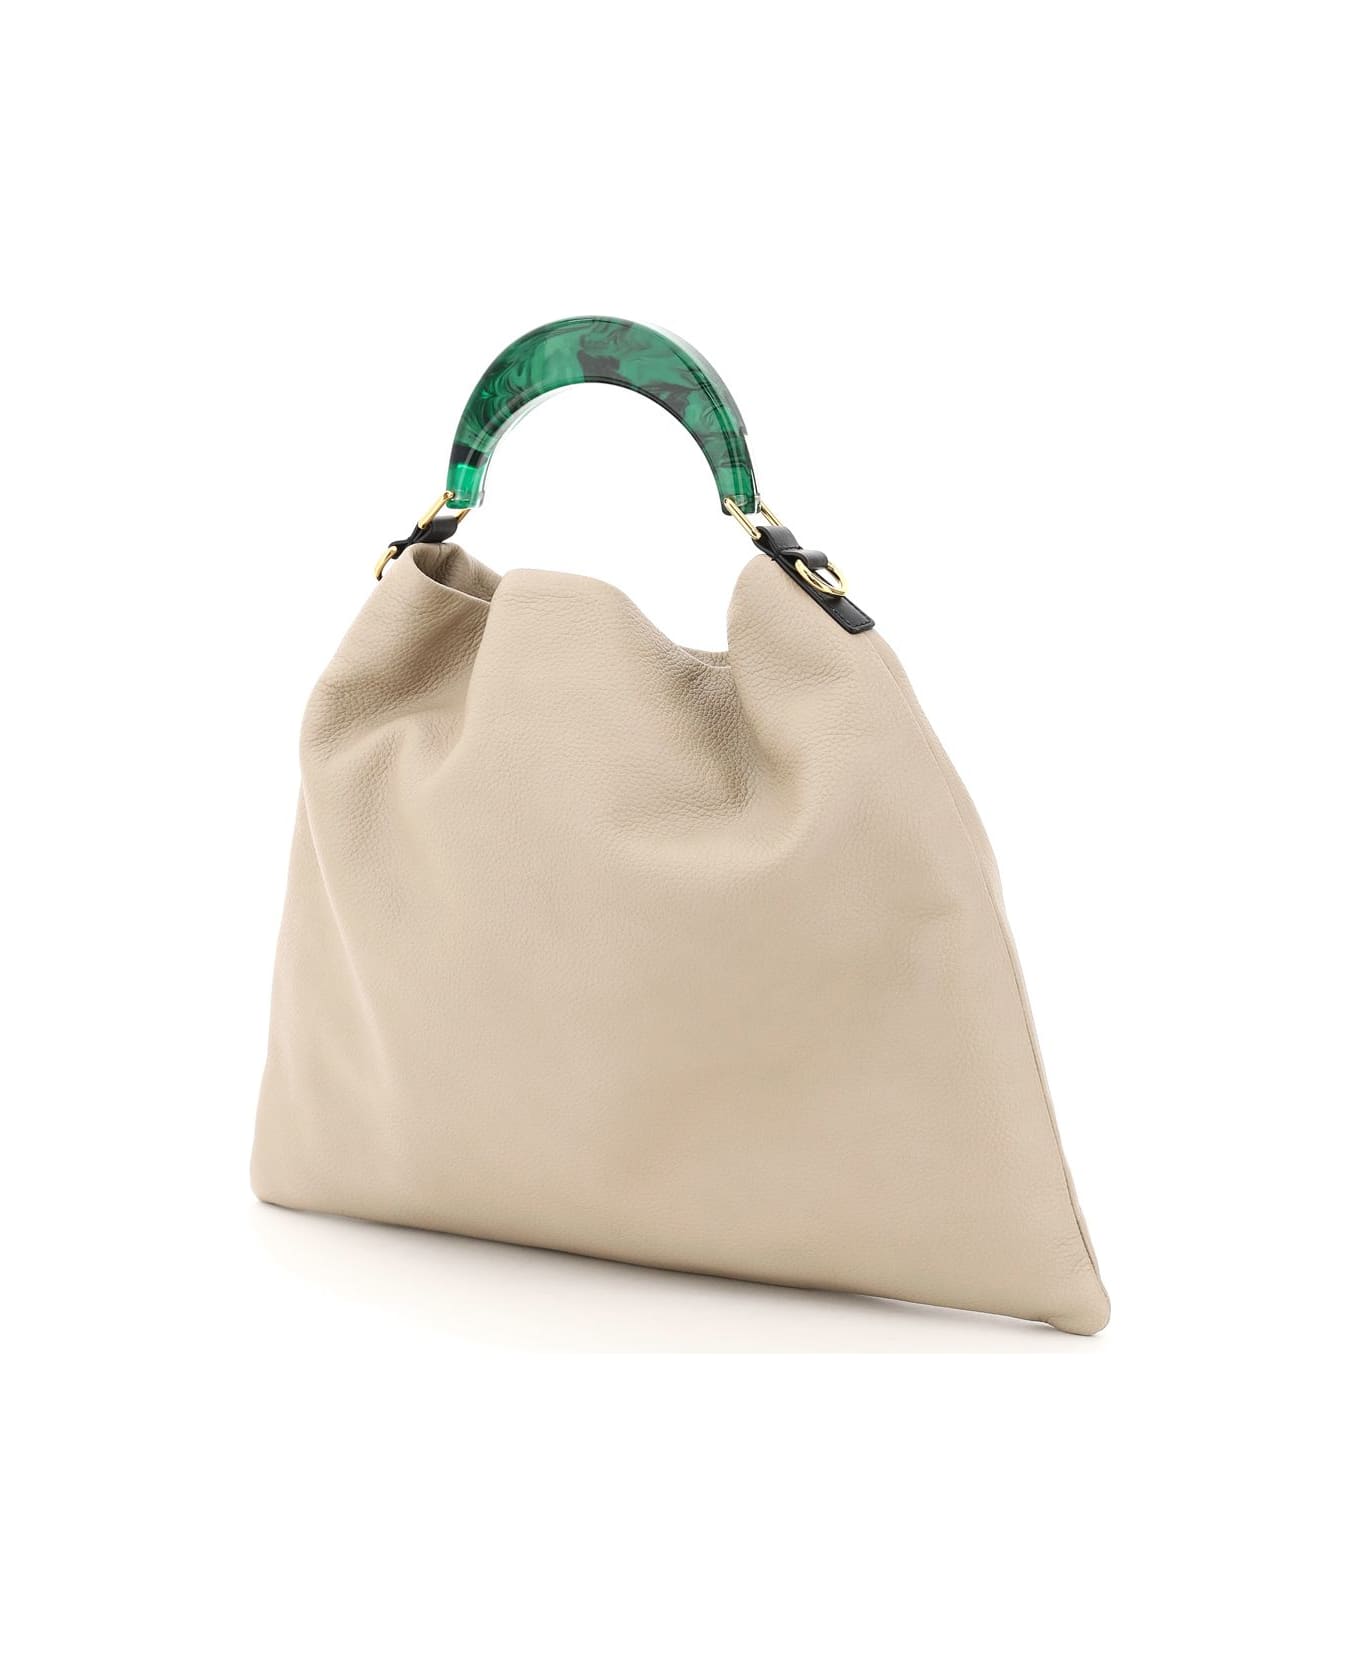 Marni Hobo Medium Bag With Resin Handle - Beige